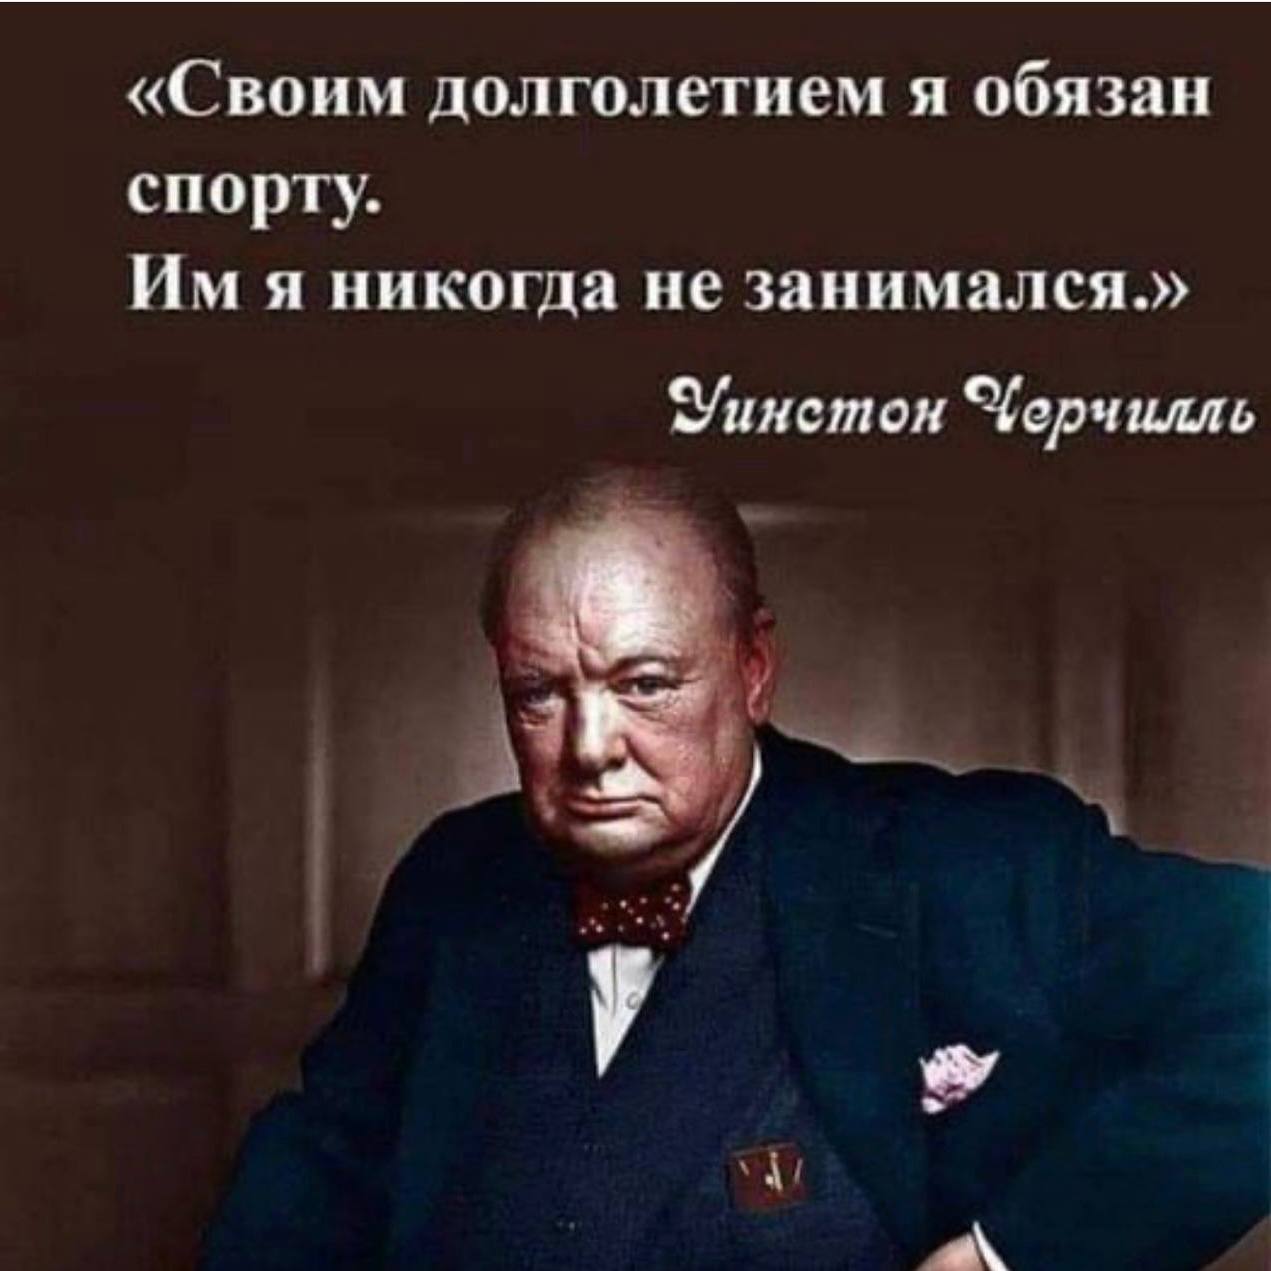 Мужчина никогда не занимался. Черчилль своим долголетием я обязан спорту. Уинстон Черчилль про спорт. Цитаты Черчилля. Уинстон Черчилль цитаты.